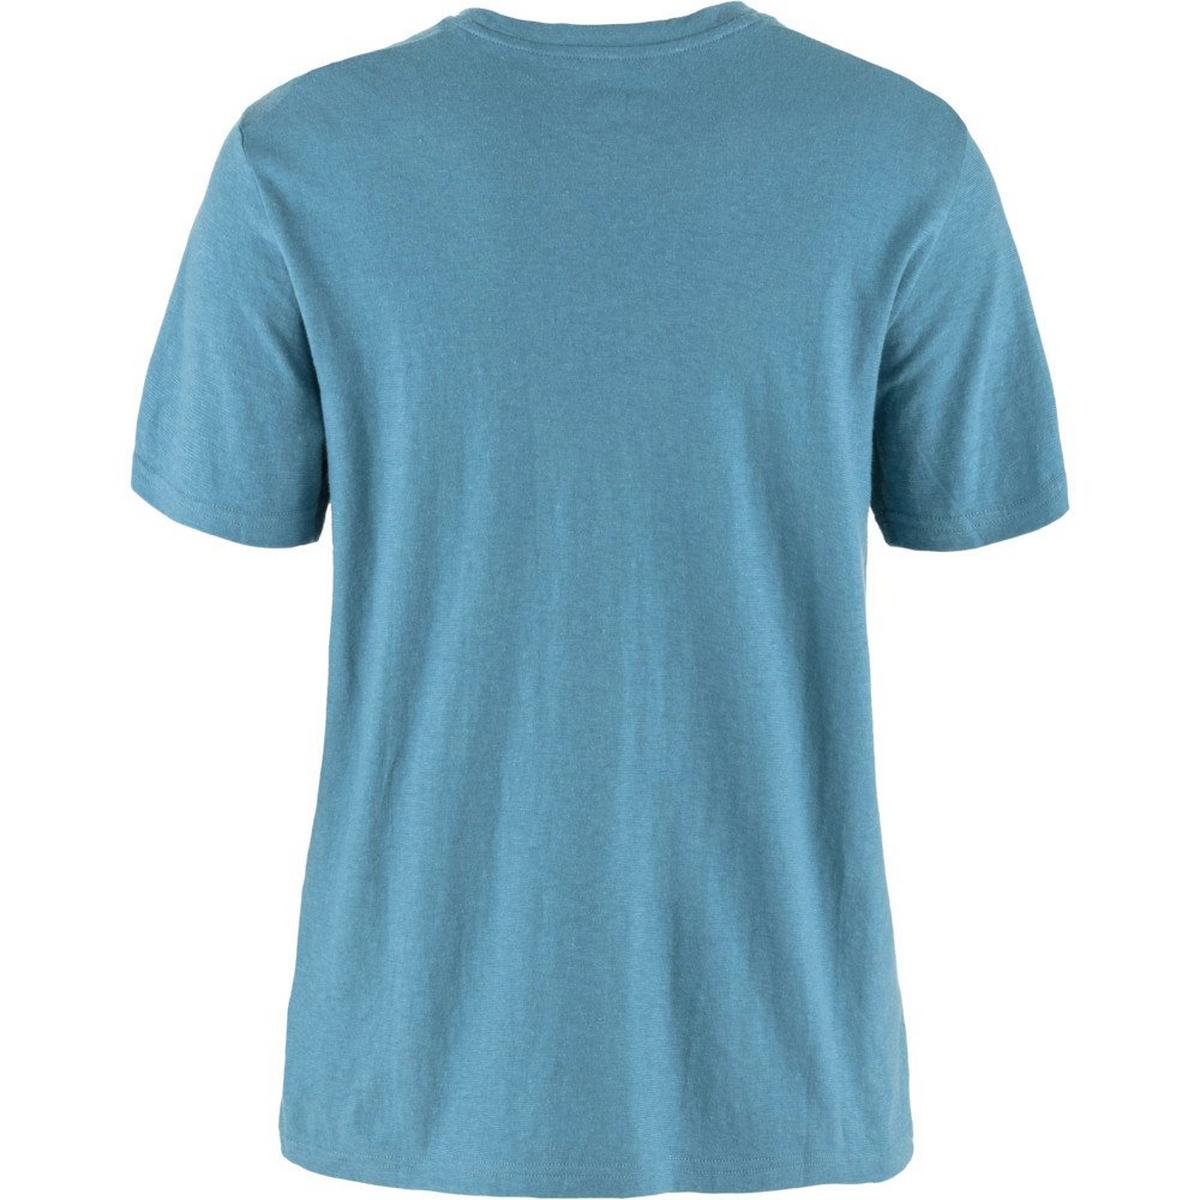 Fjallraven Women's Hemp Blend T-shirt - Dawn Blue